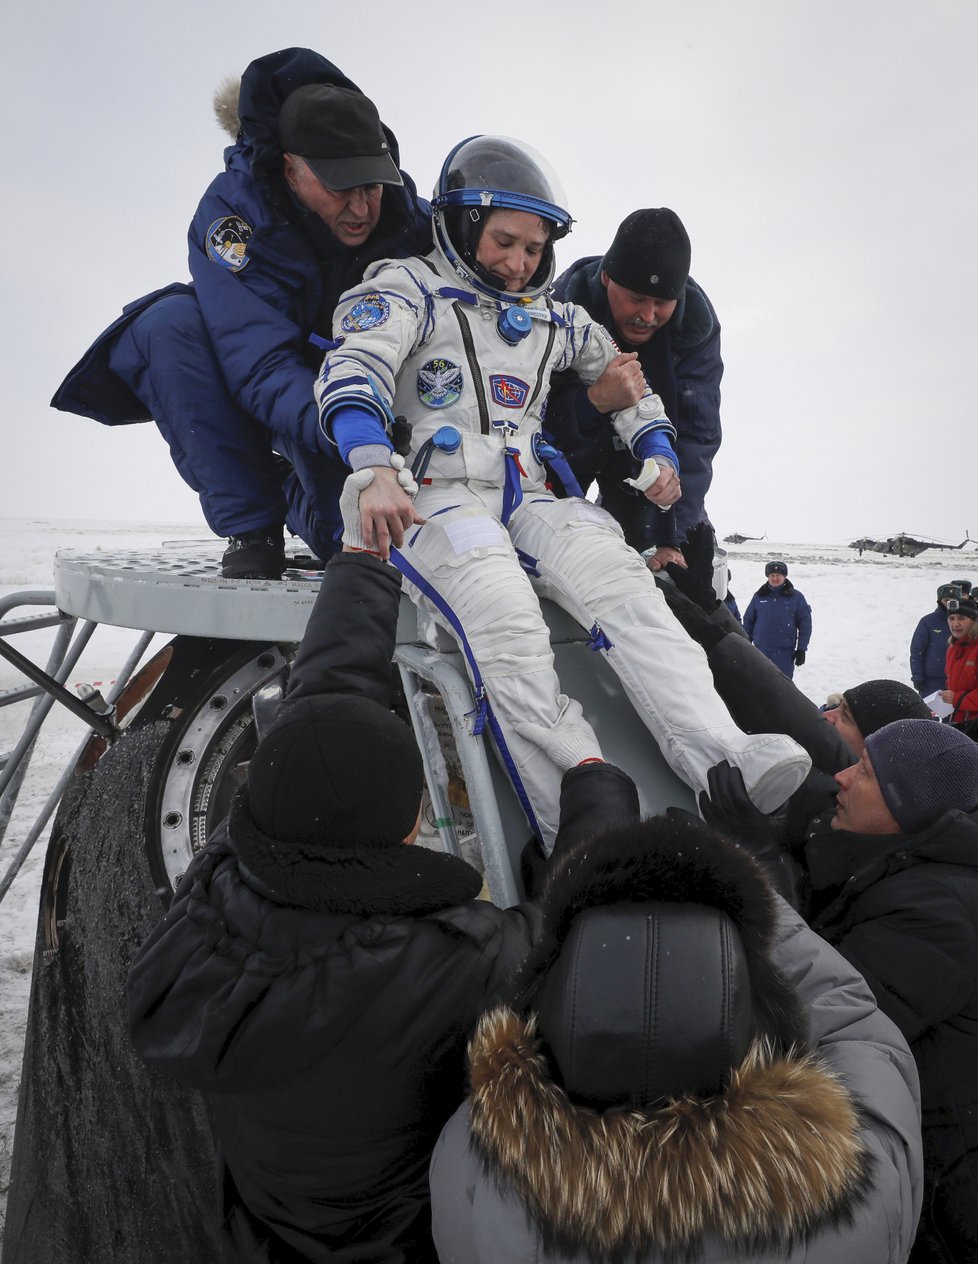 Kosmonauti ze vrátili z Mezinárodní vesmírné stanice zpět na Zemi